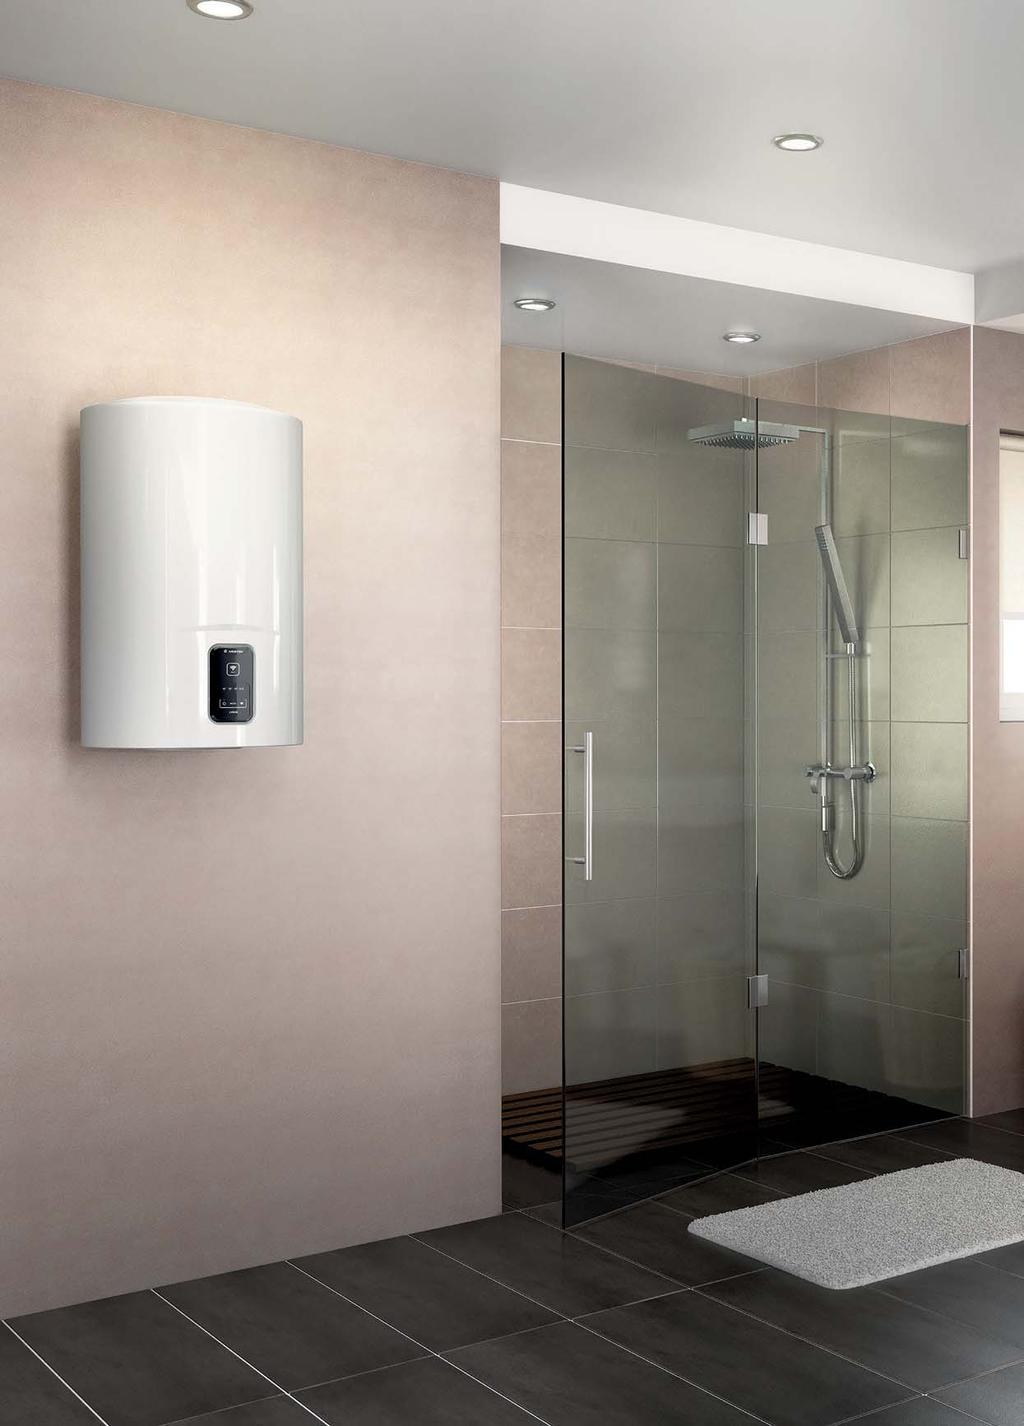 grzewczych / Funkcja Shower Ready: liczba aktualnie dostępnych pryszniców jest pokazana w aplikacji ŁĄCZNOŚĆ WI-FI / Aplikacja Aqua Ariston Net: podgrzewacz wody może być kontrolowany zdalnie za